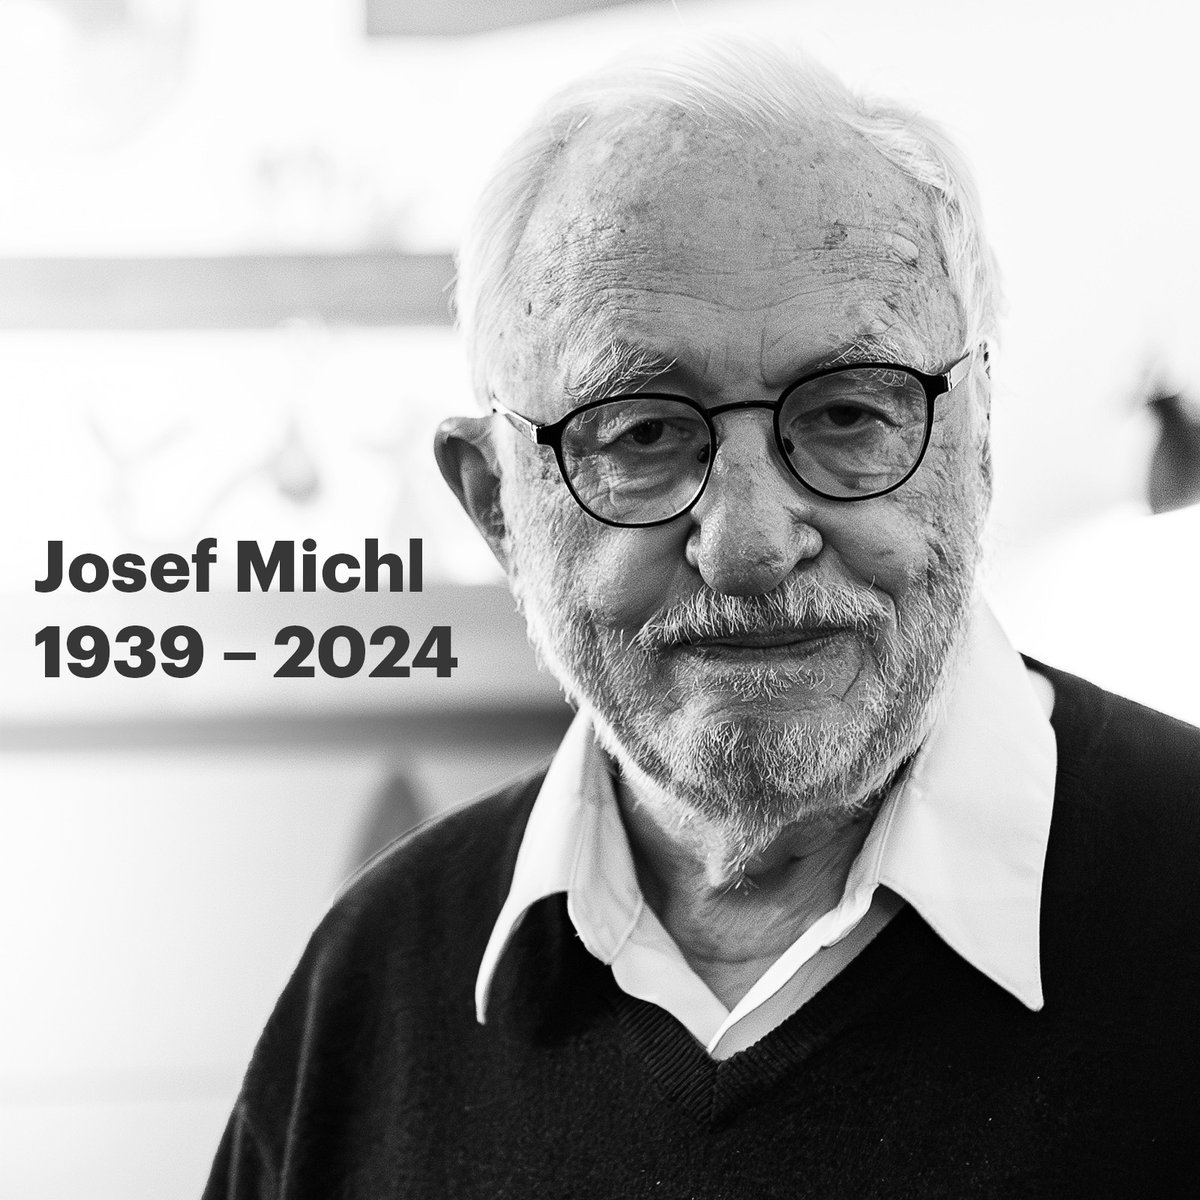 S hlubokým zármutkem oznamujeme, že ve věku 85 let dnes zemřel významný český chemik a vědecká osobnost světového významu prof. Josef Michl. V @IOCBPrague vedl vědeckou skupinu zaměřenou na organickou chemii, současně od roku 1991 do své smrti působil na @cuboulder.

'Byl to…